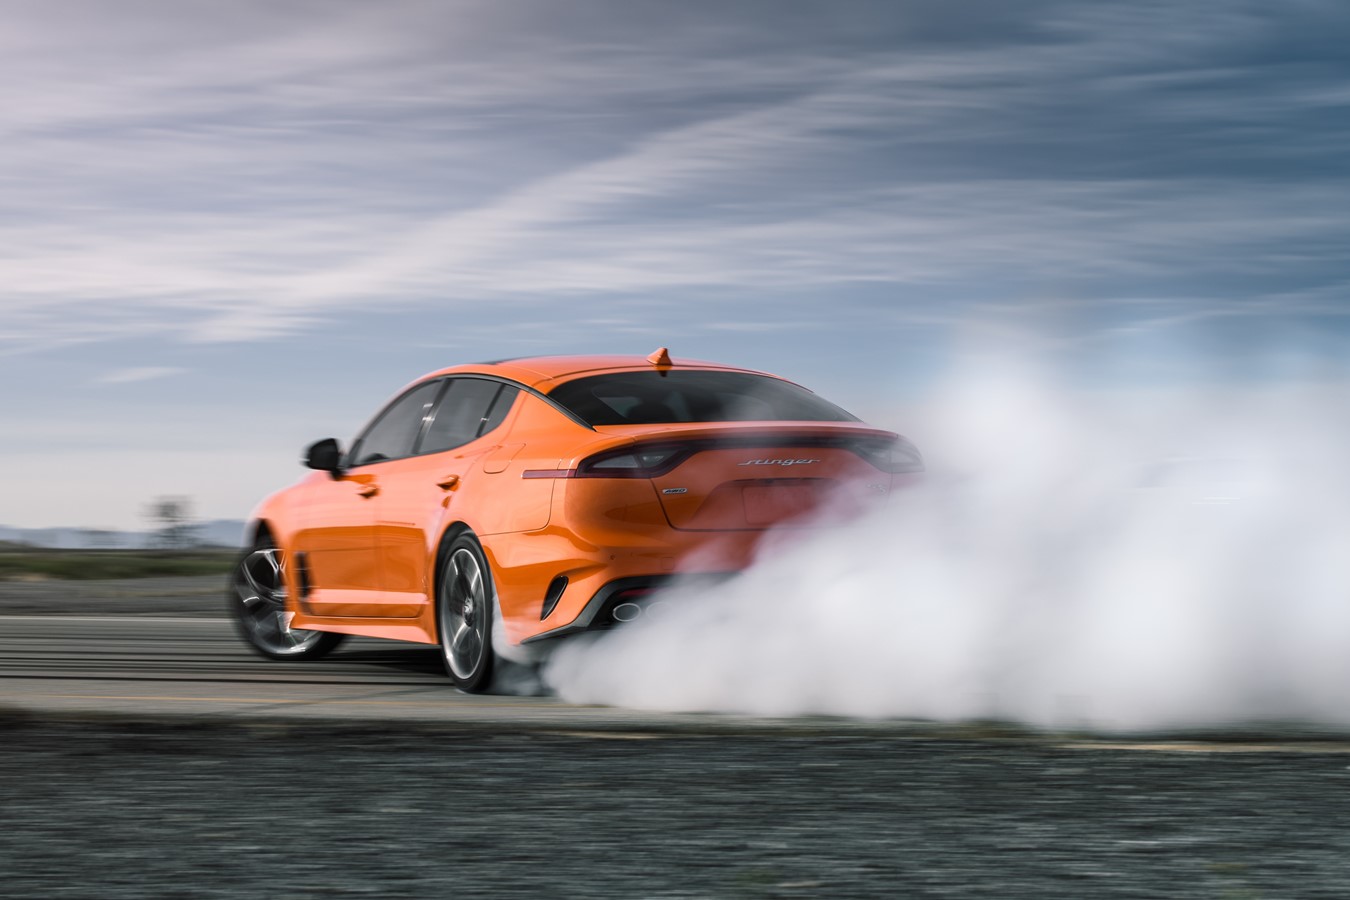 An orange Kia Stinger GTS performs a burnout